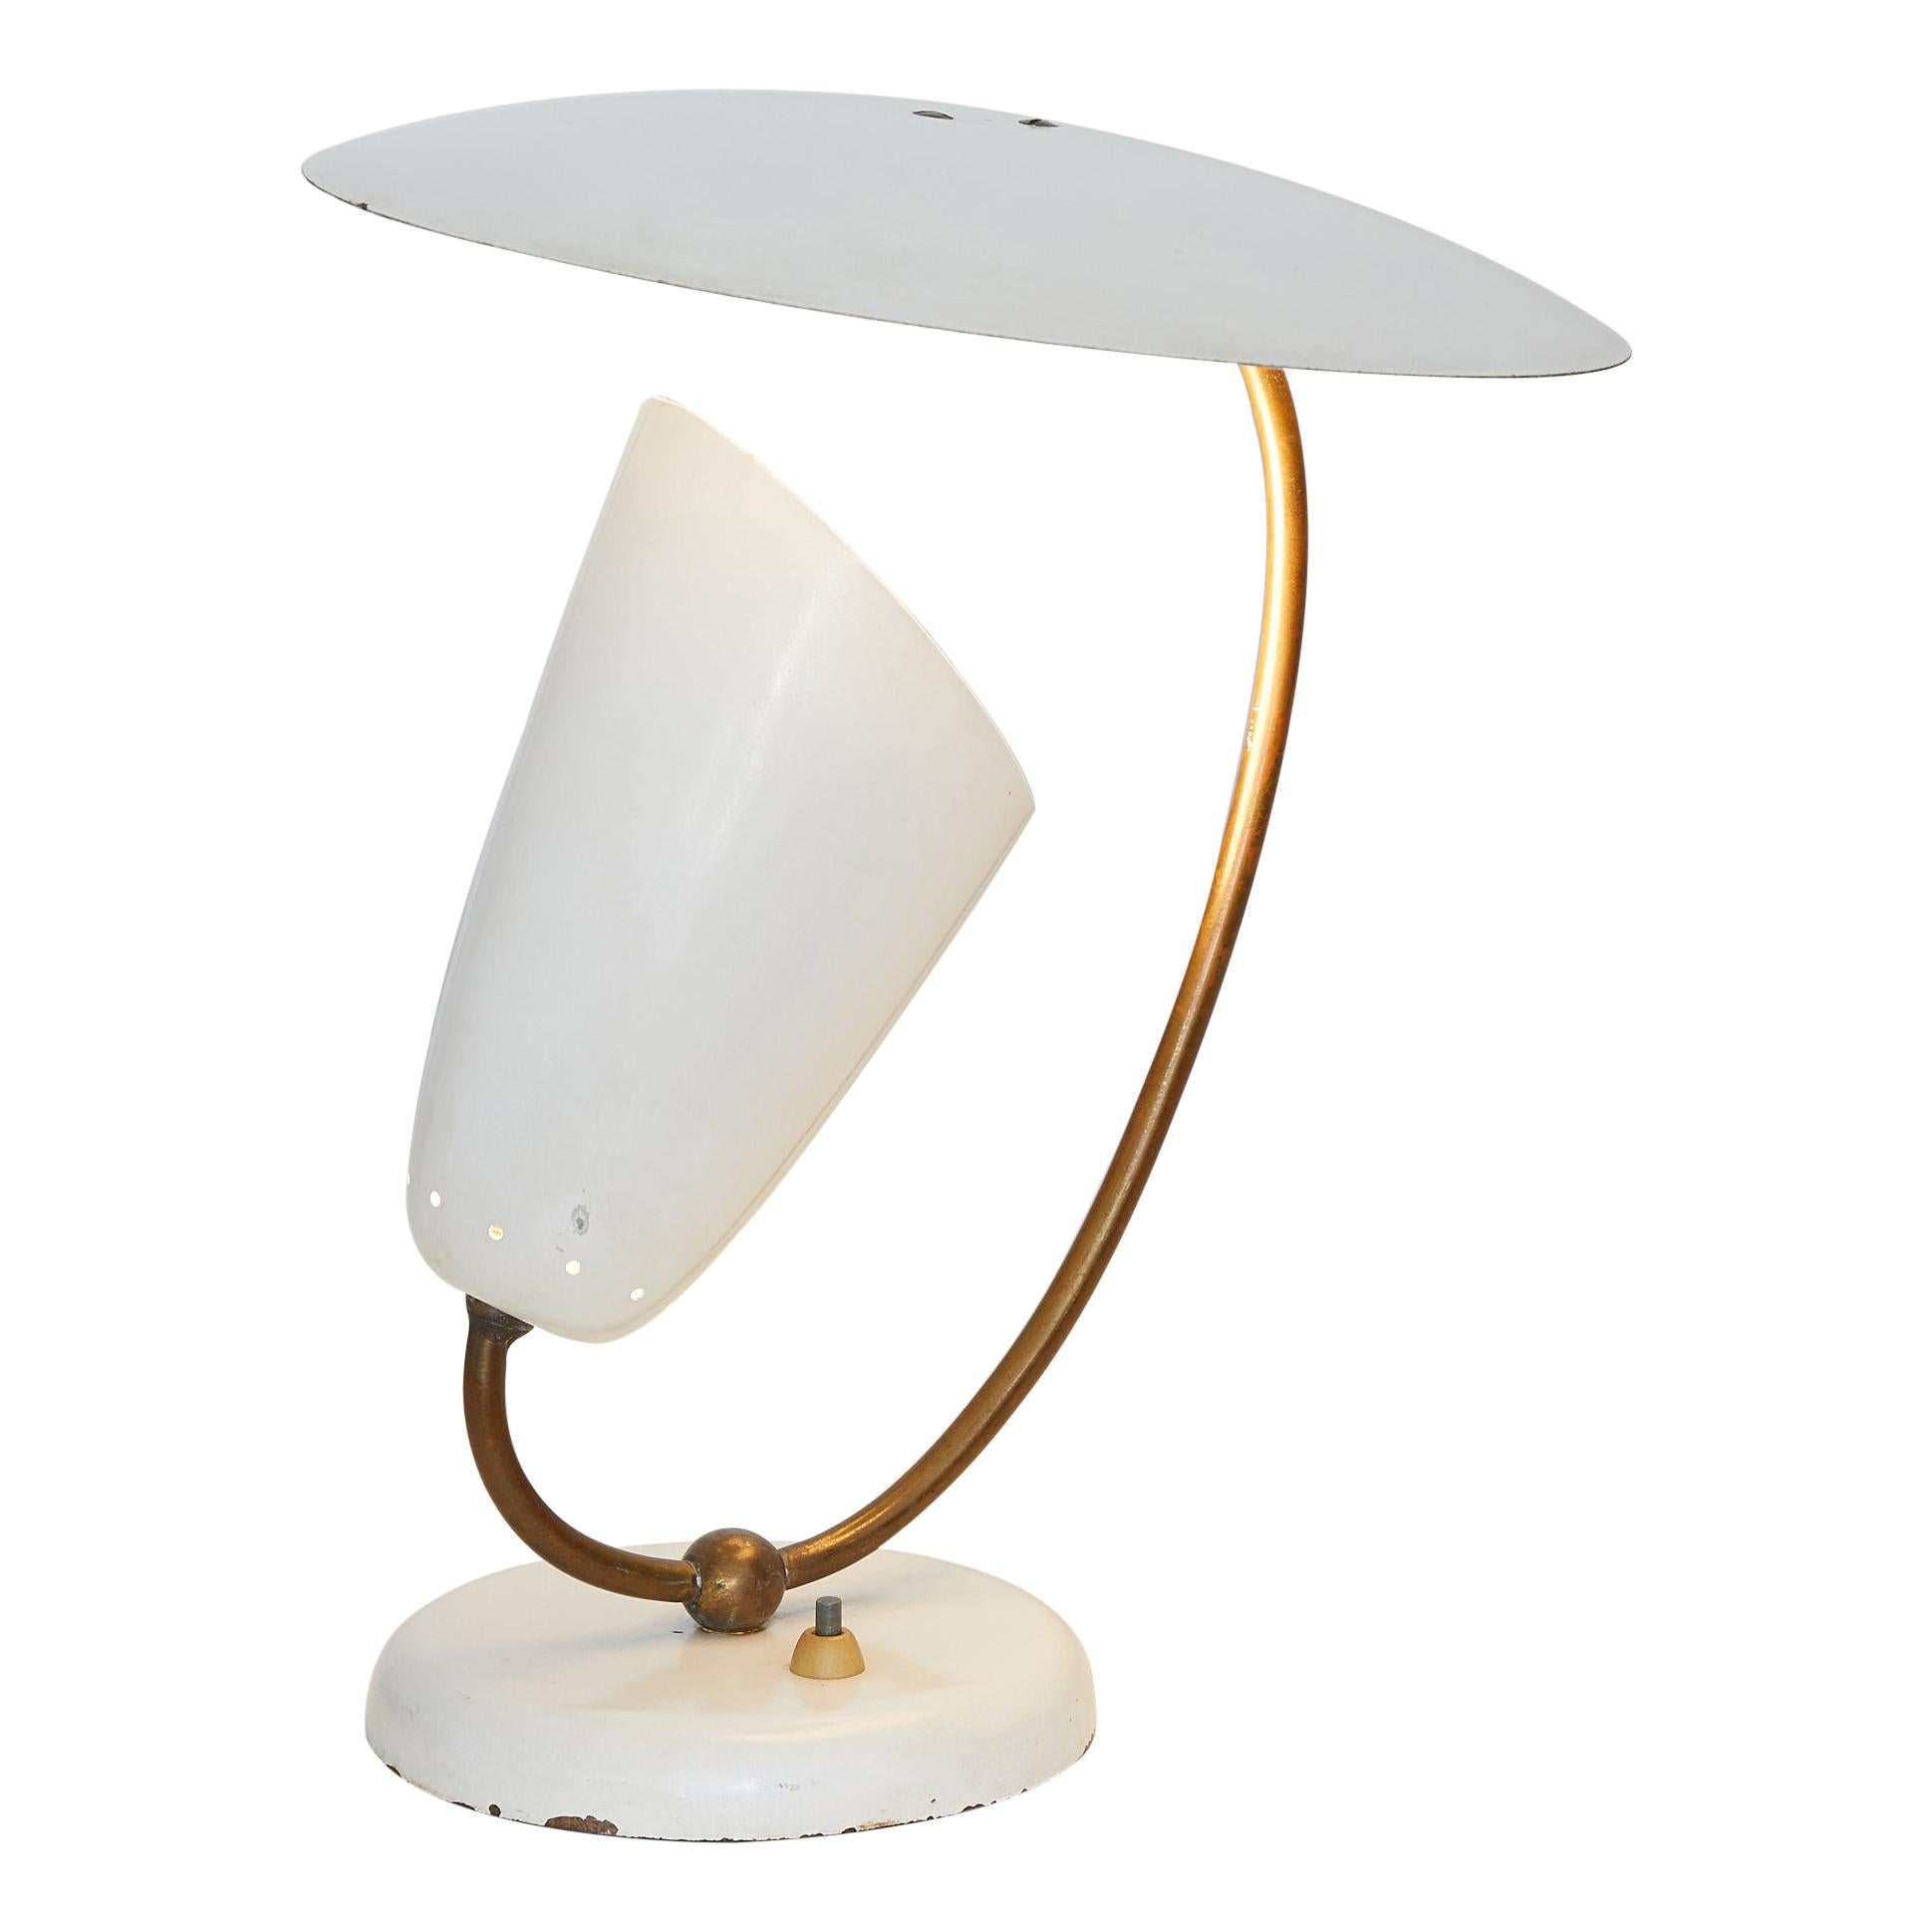 Brass and Enameled Metal Table Lamp, Stilnovo Inspired, Switzerland, 1950